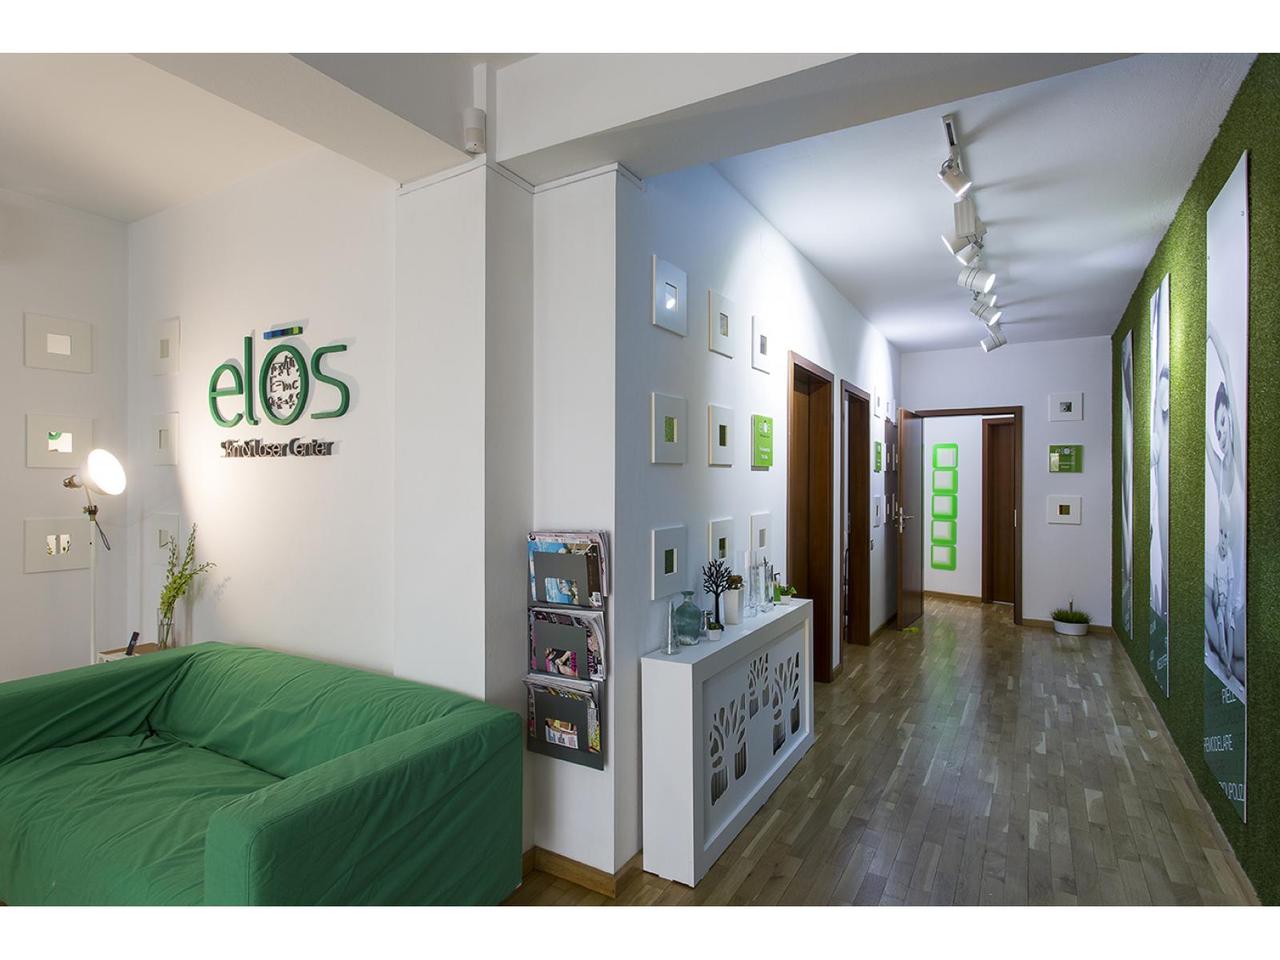 Elos Skin & Laser Center - Clinica_Elos.jpg